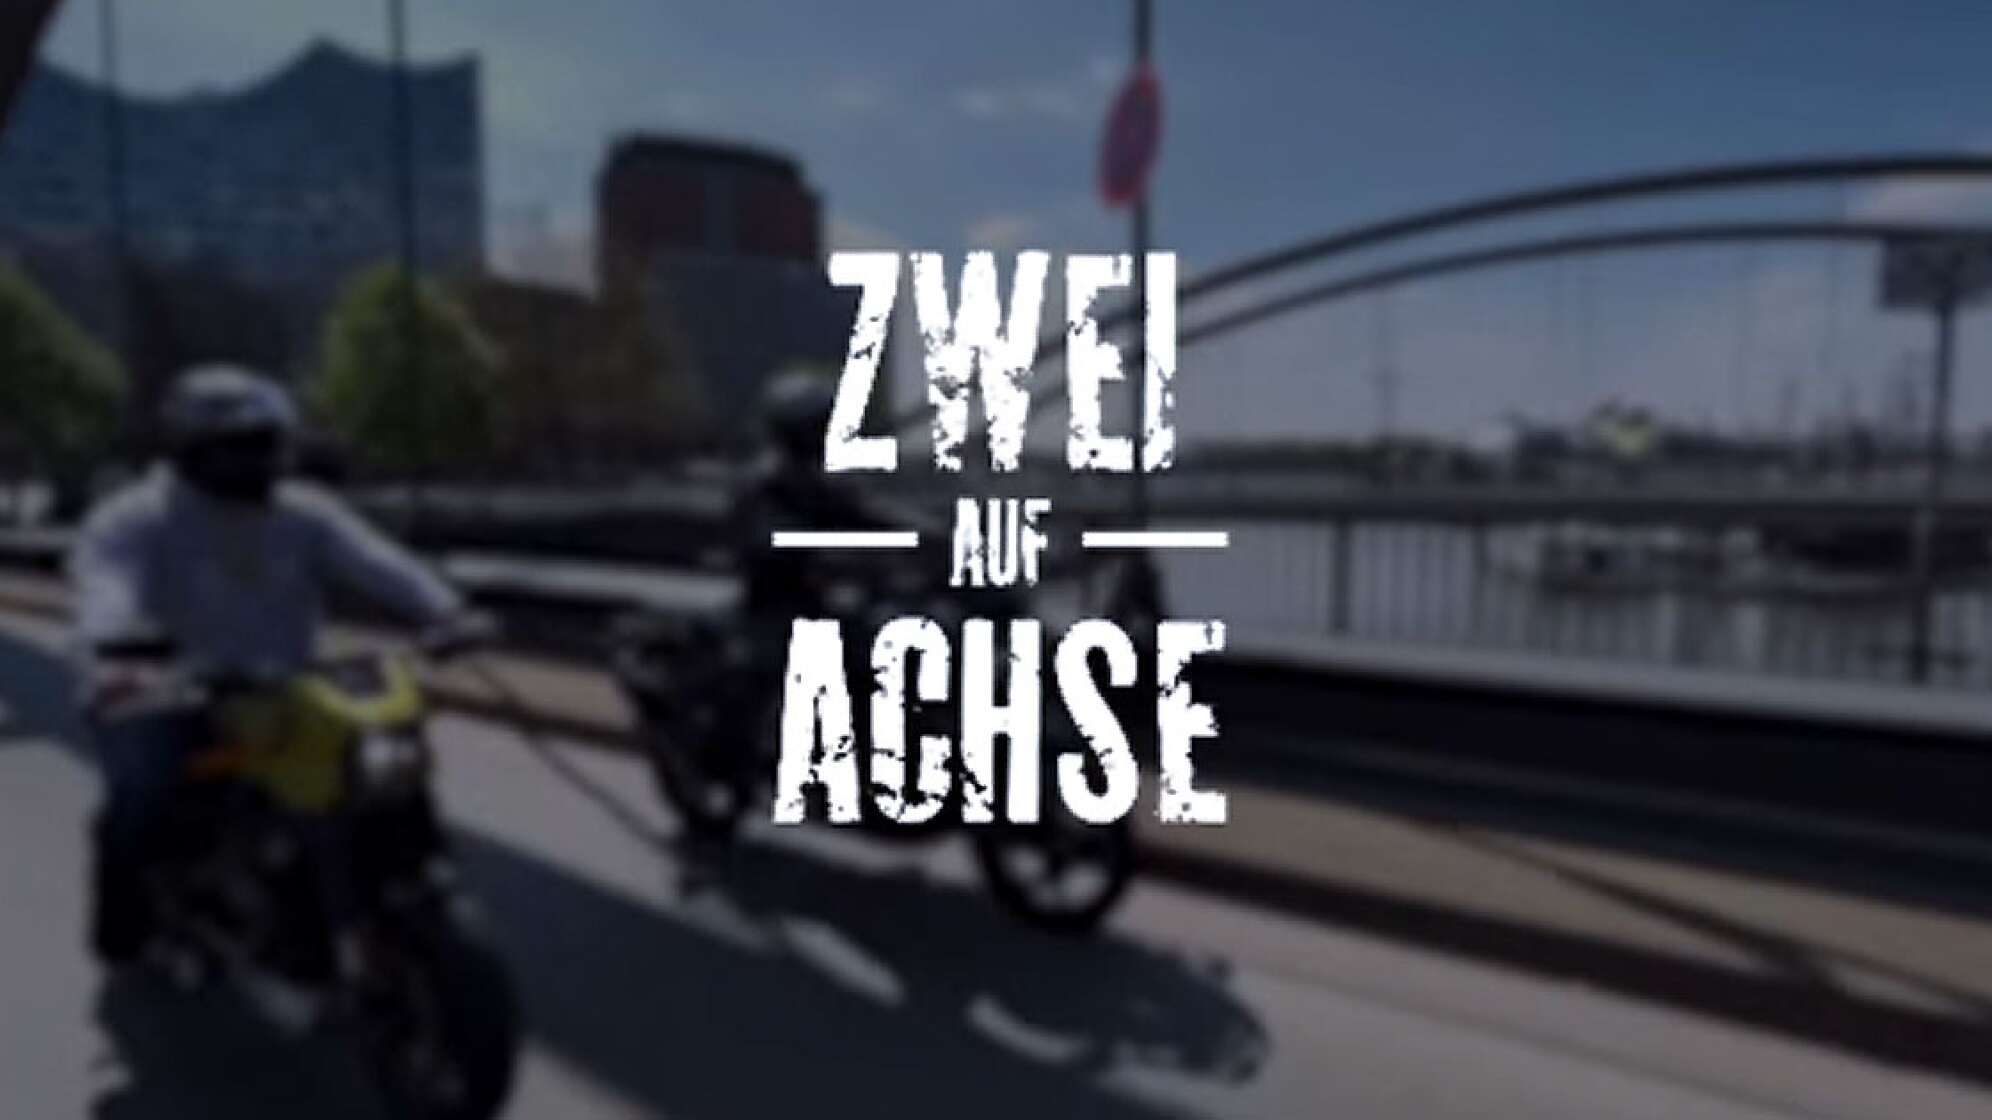 das Titelbild des Video Blogs "Zwei auf Achse" - zwei Motorradfahrer auf einer Brücke in der Speicherstadt vor der Kulisse des Hamburger Hafens mit der Elbphilharmonie